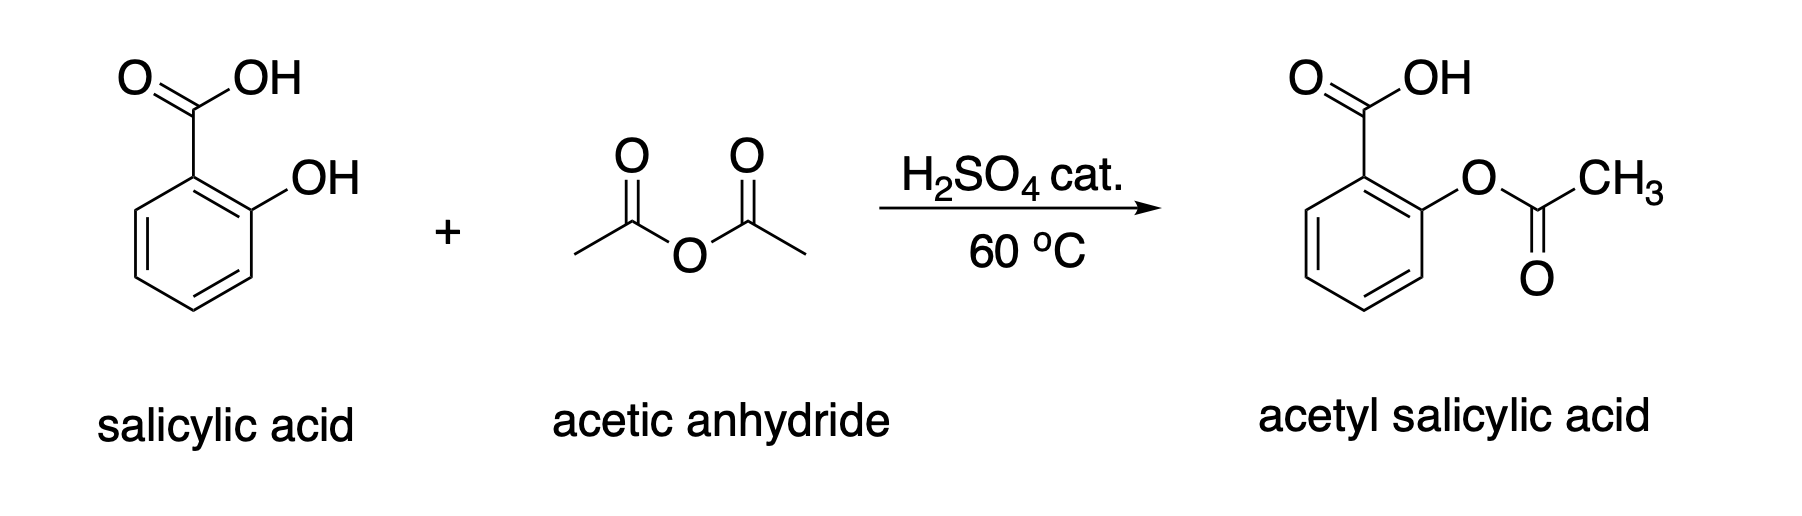 ОН
ОН
H2SO4 cat.
CHз
Но
60 °C
salicylic acid
acetic anhydride
acetyl salicylic acid
